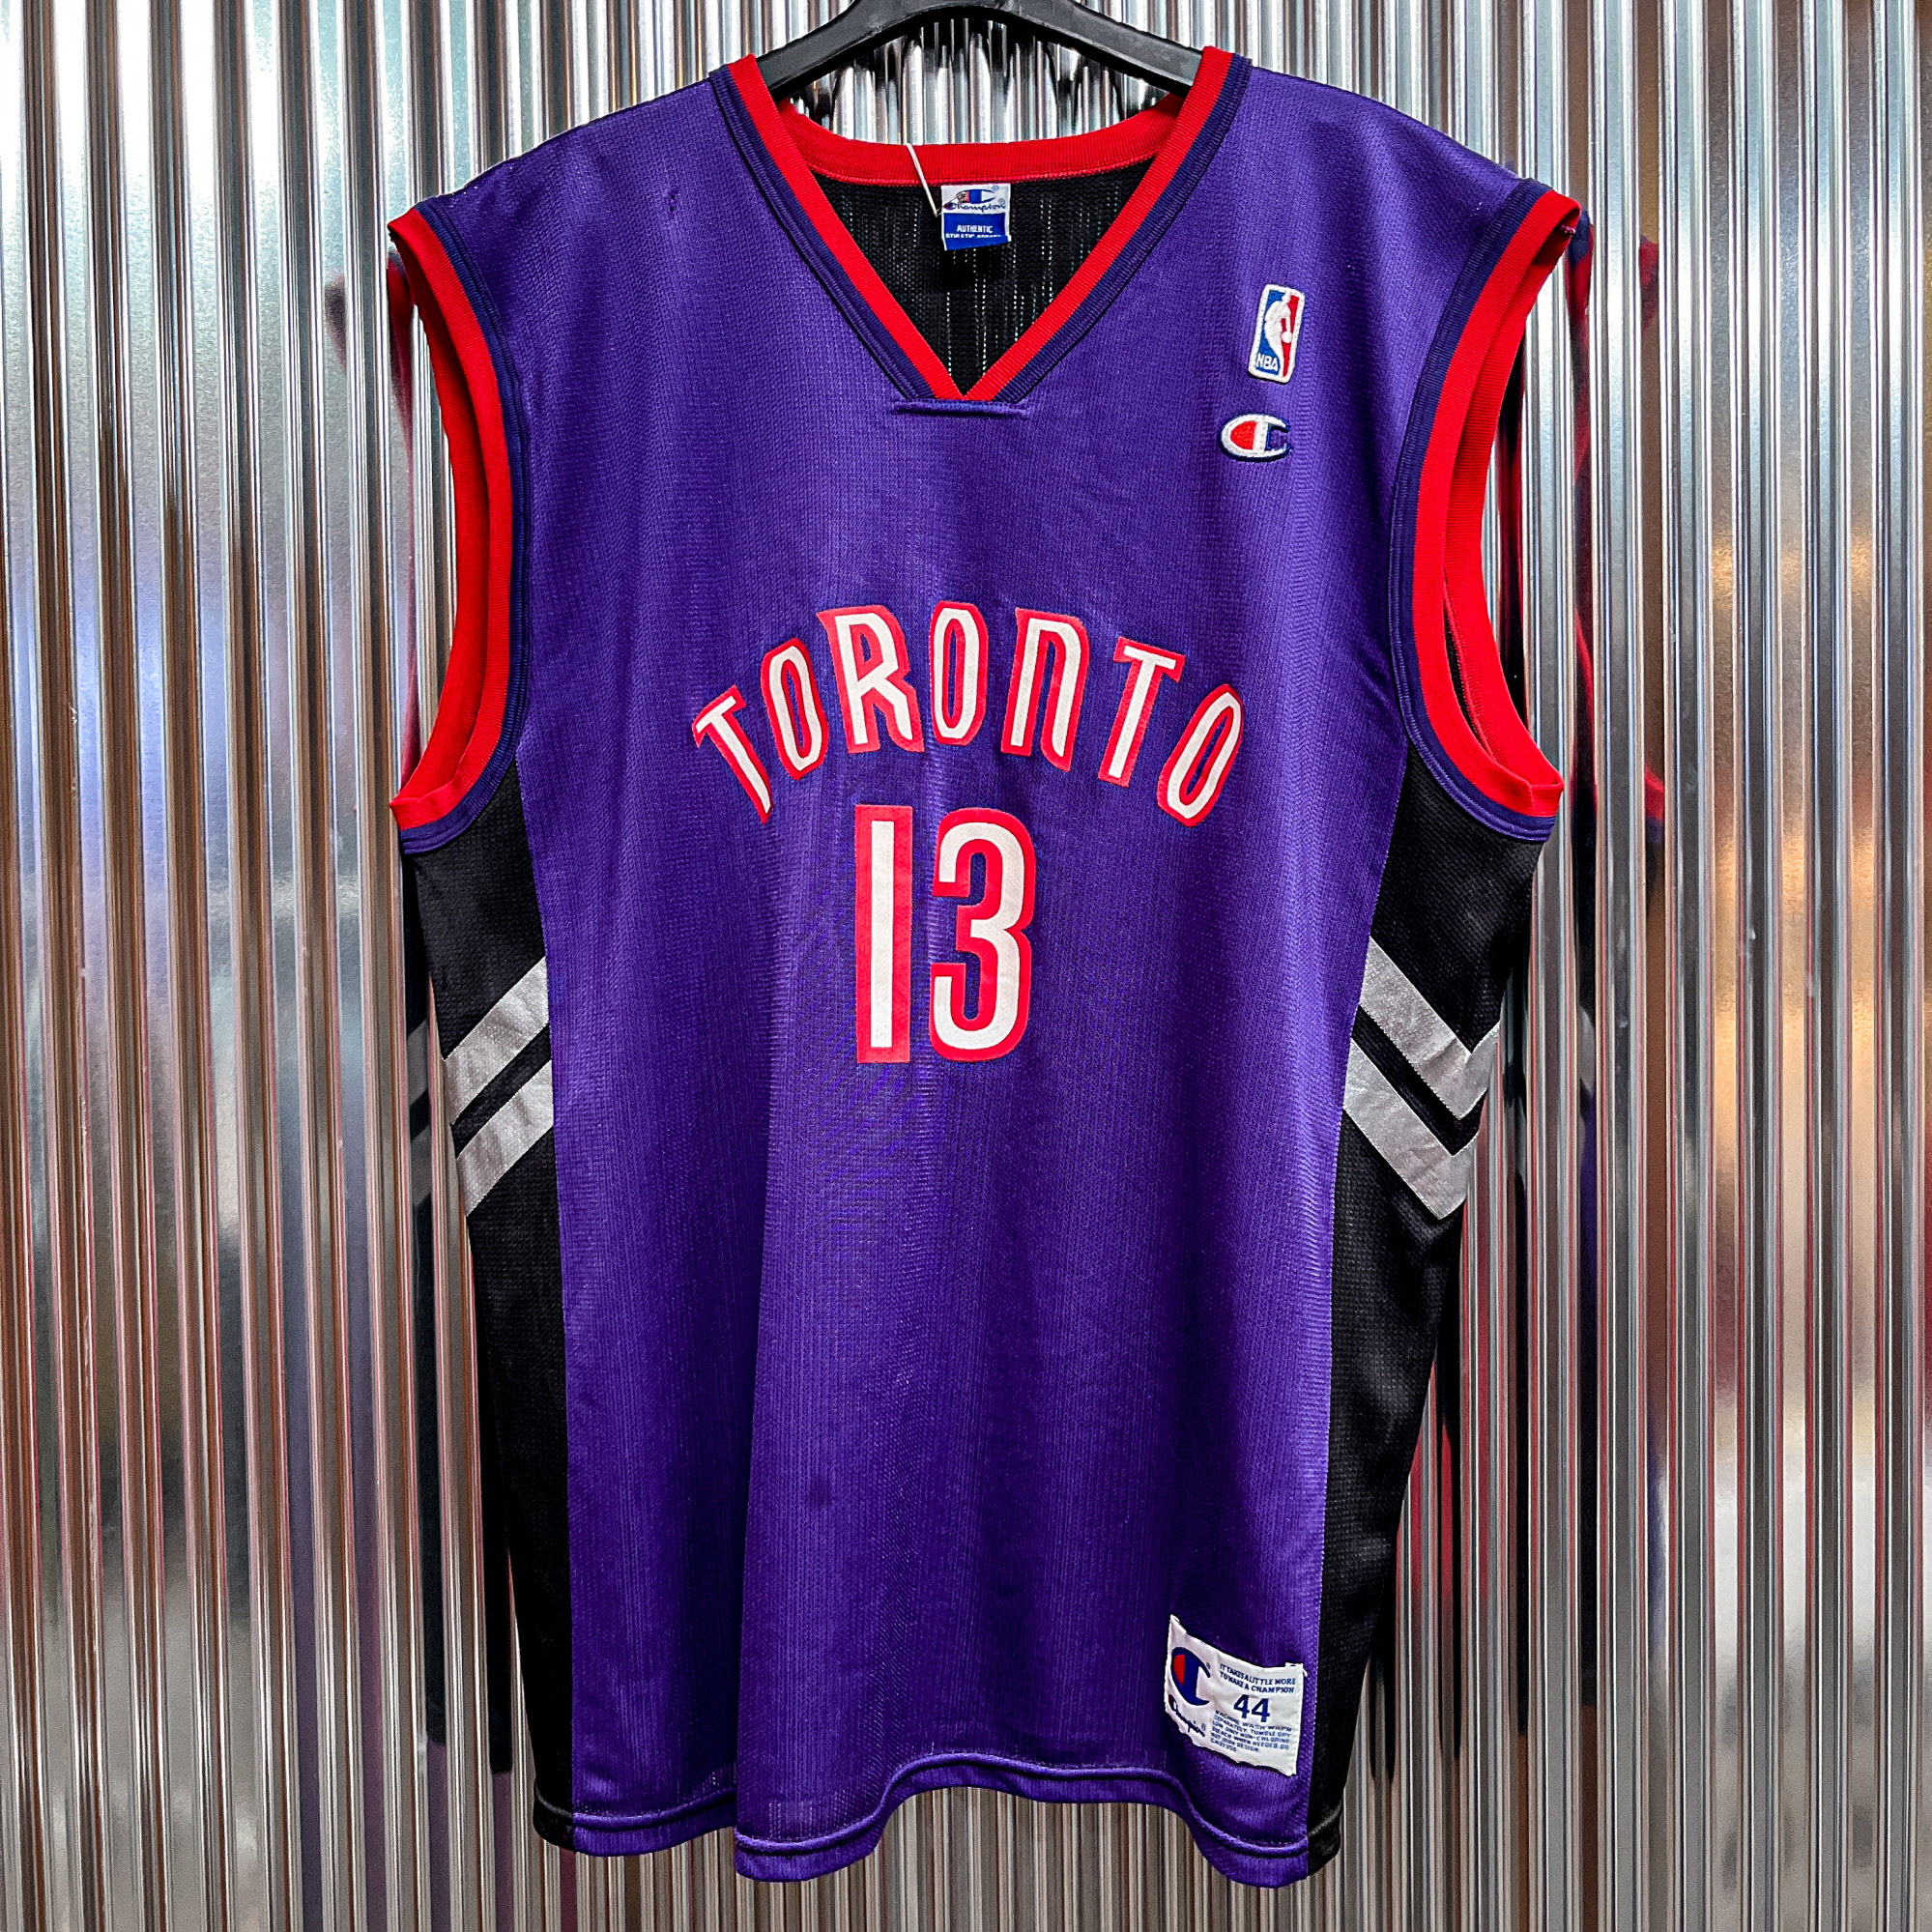 챔피온 NBA 토론토 랩터스 스윙맨 (국내 XL) T899